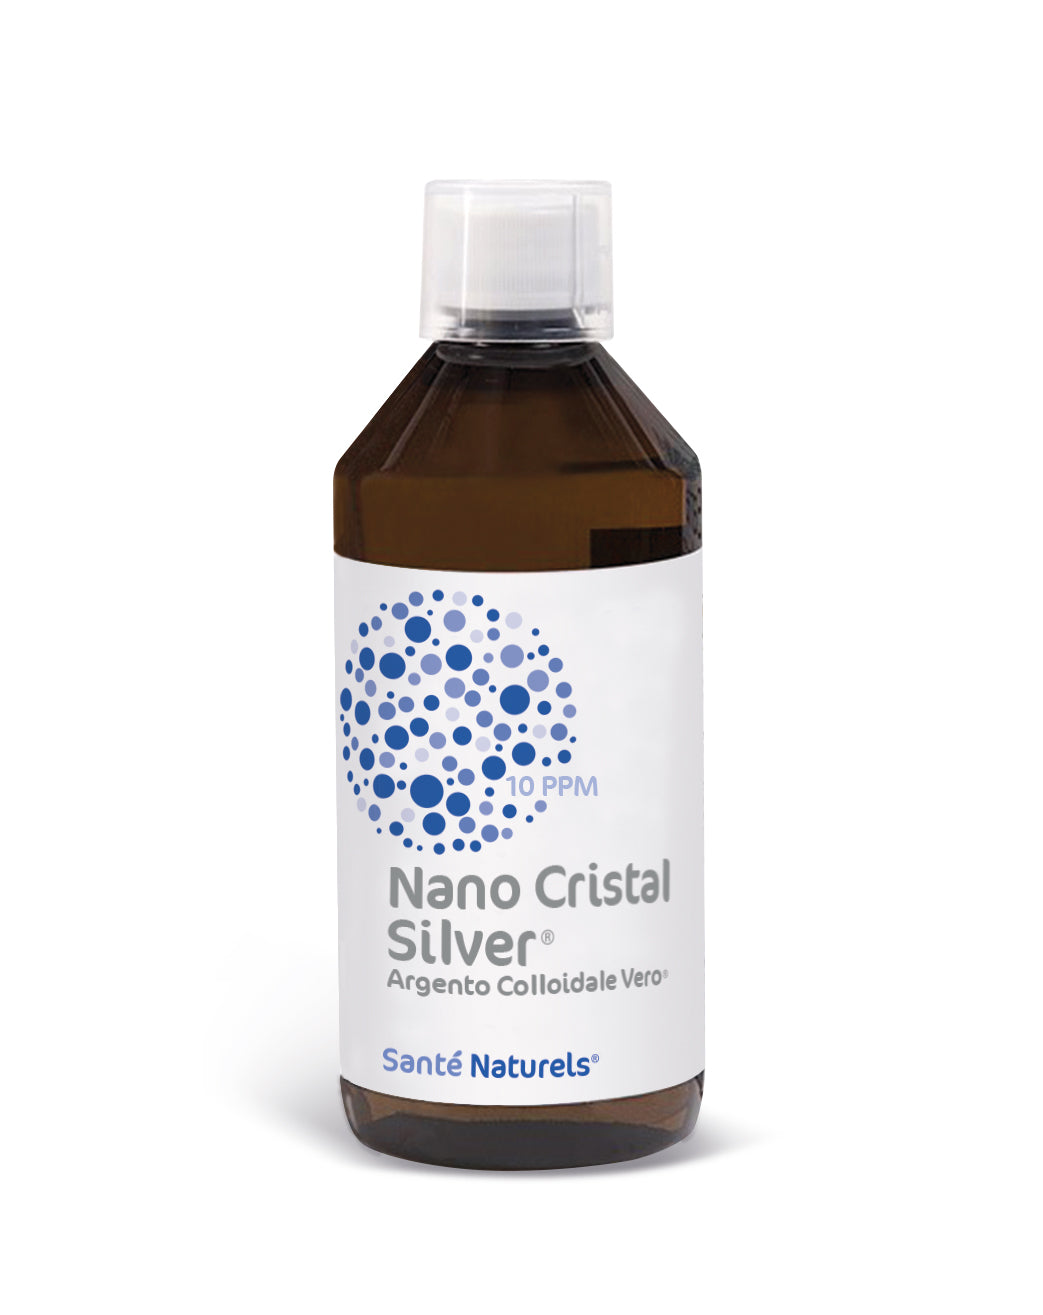 Plata Coloidal Verdadera Nano Cristal Silver® 20 ppm 500 ml LA ELECCIÓN MÁS ECONÓMICA